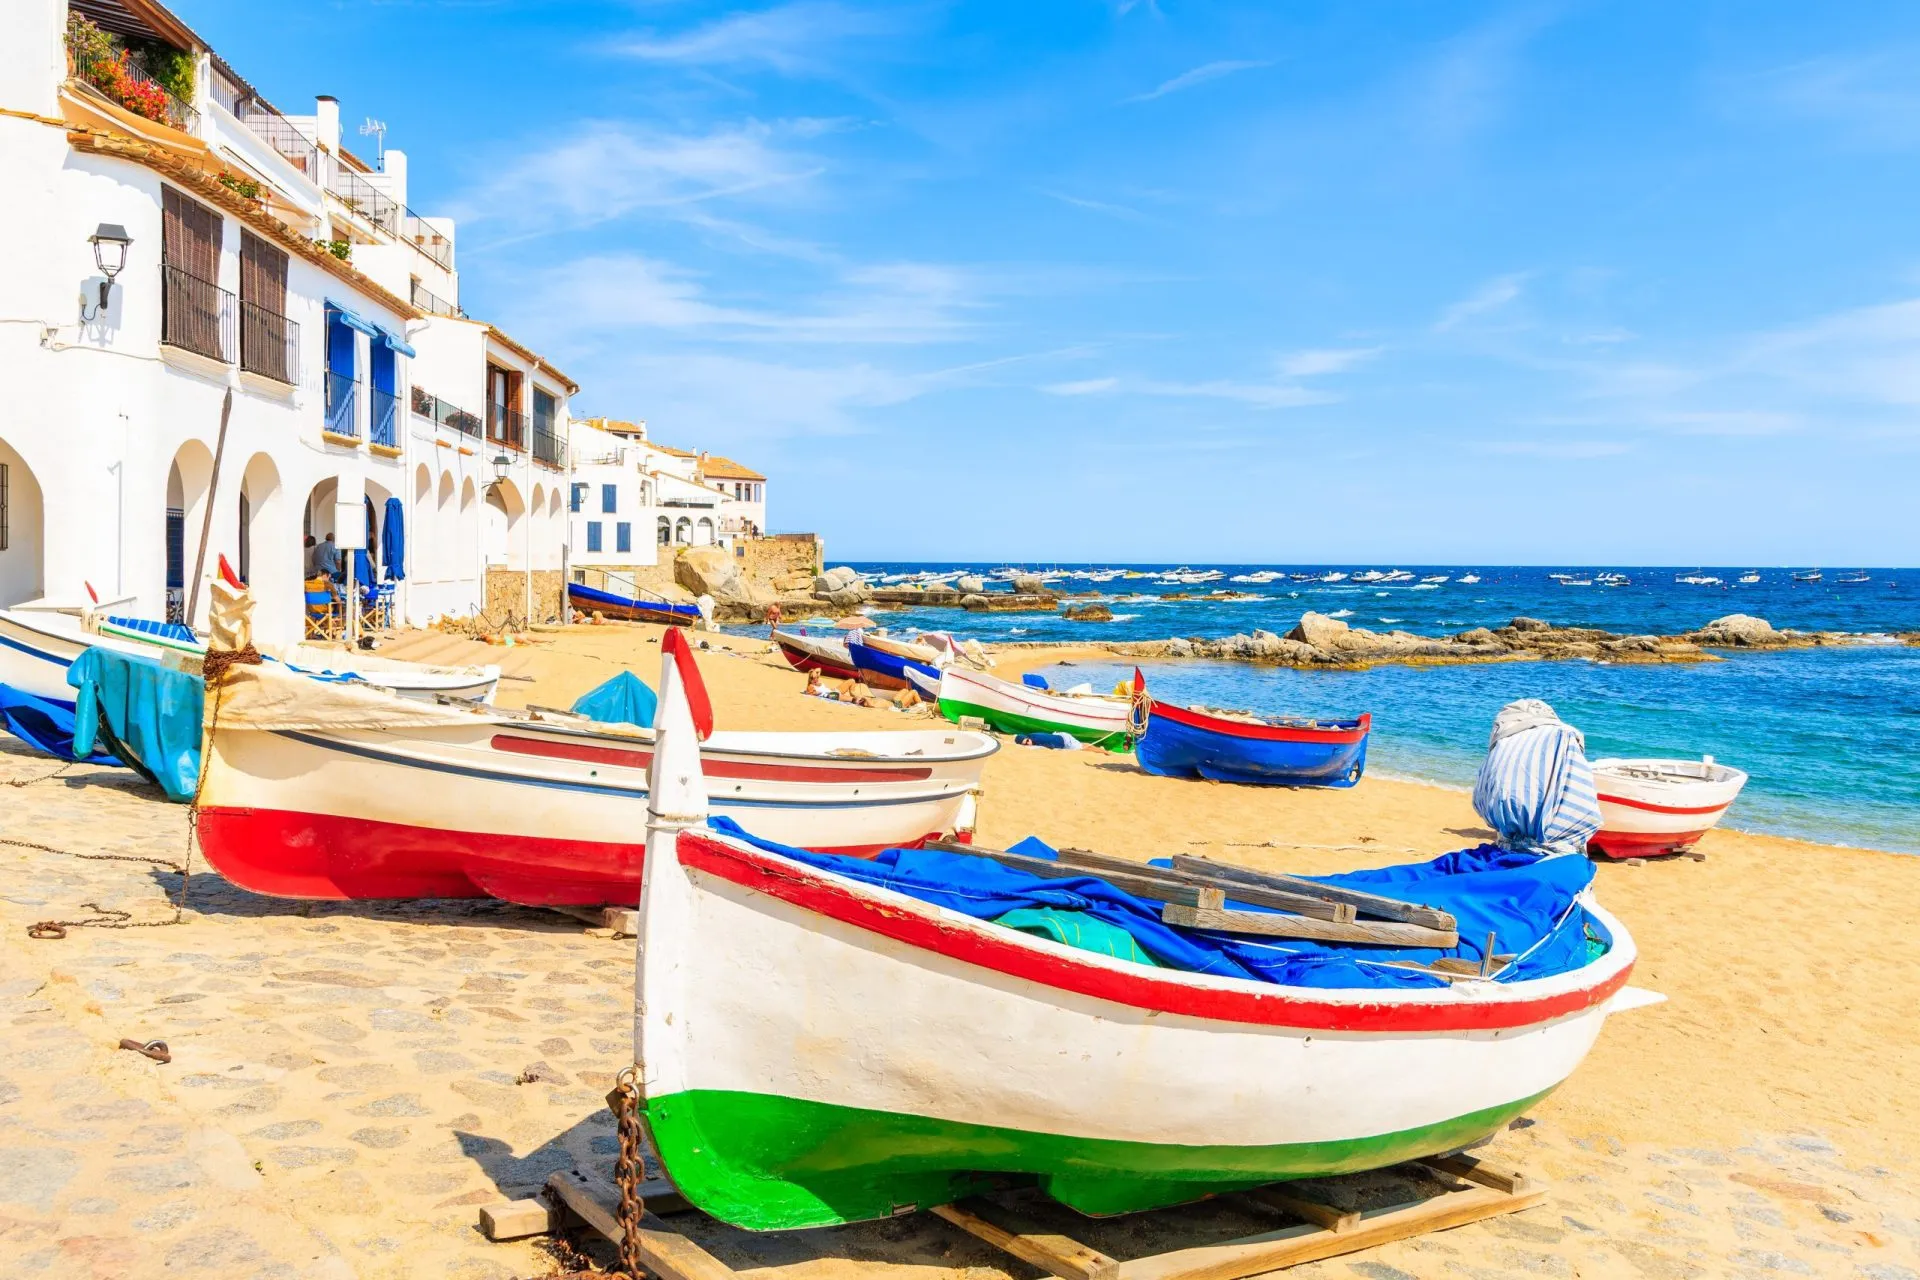 Tradisjonelle fiskebåter på stranden i Calella de Palafrugell, en naturskjønn landsby med hvite hus og sandstrand med klart, blått vann, Costa Brava, Catalonia, Spania.